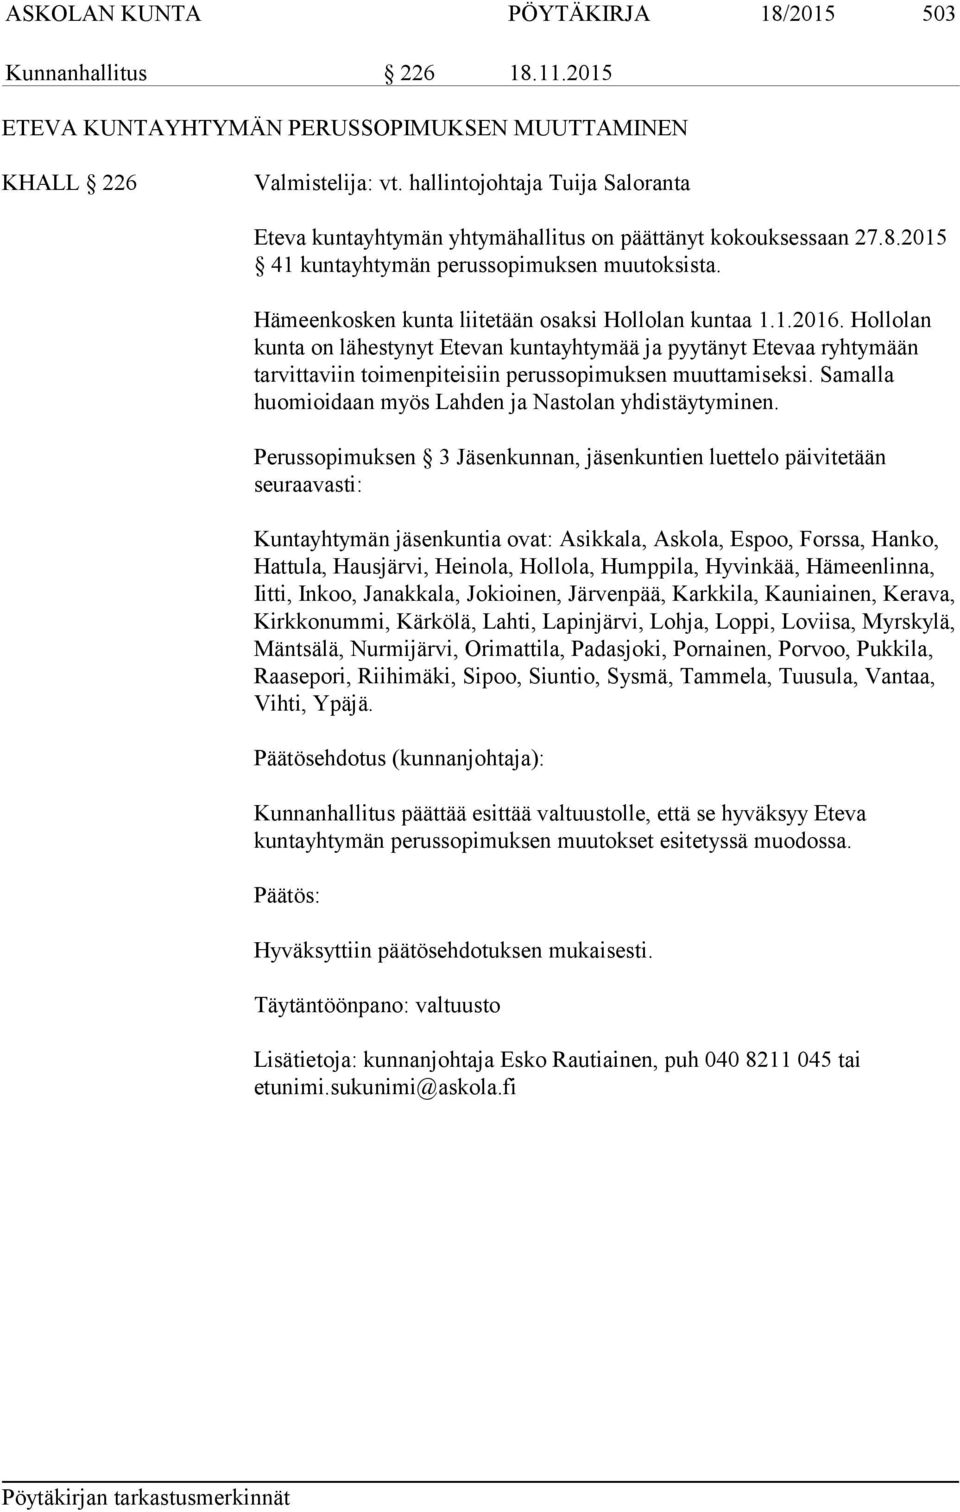 Hämeenkosken kunta liitetään osaksi Hollolan kuntaa 1.1.2016. Hollolan kunta on lähestynyt Etevan kuntayhtymää ja pyytänyt Etevaa ryhtymään tarvittaviin toimenpiteisiin perussopimuksen muuttamiseksi.